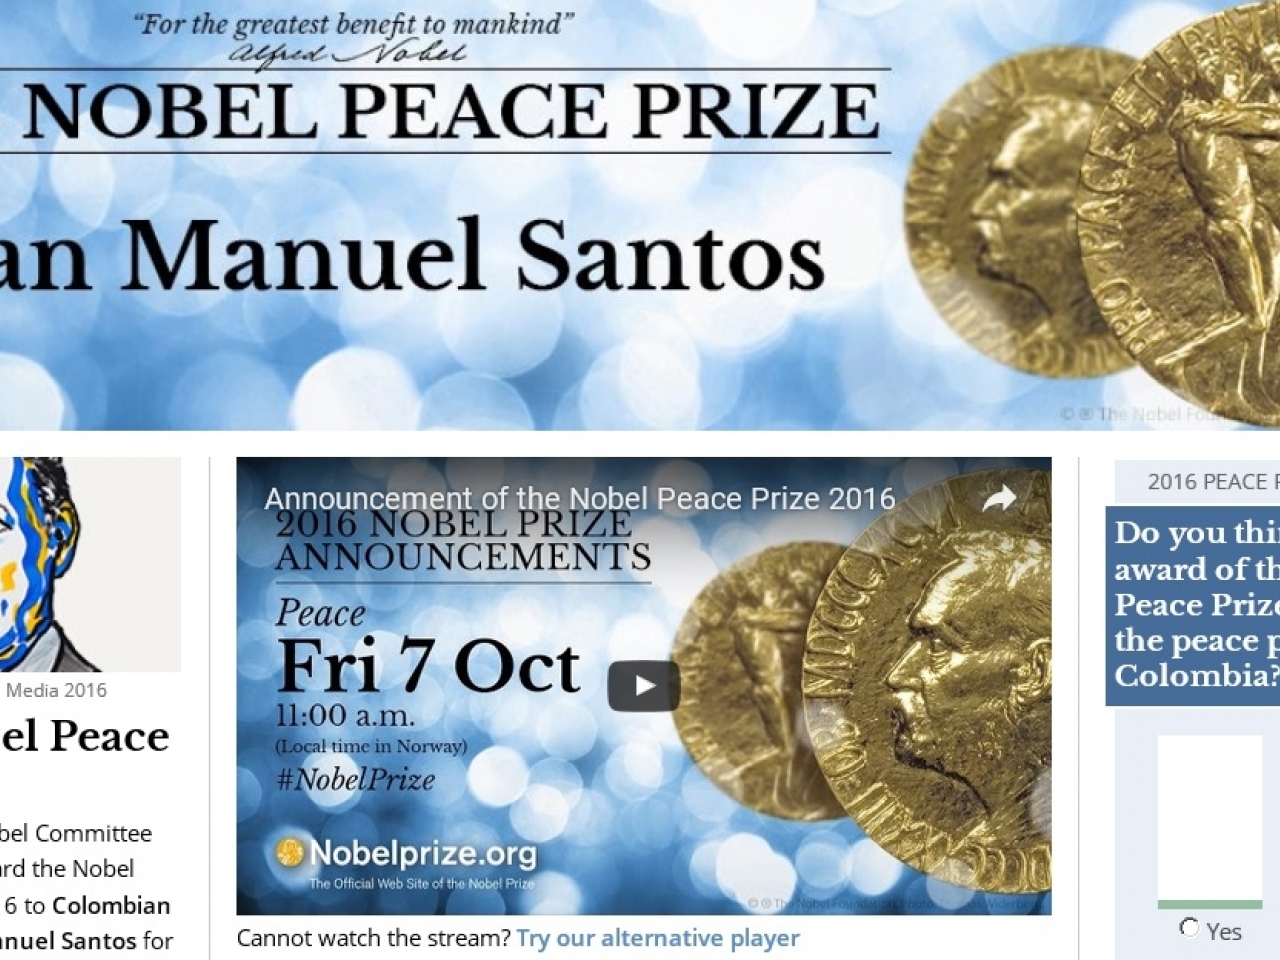 哥倫比亞總統奪諾貝爾和平獎